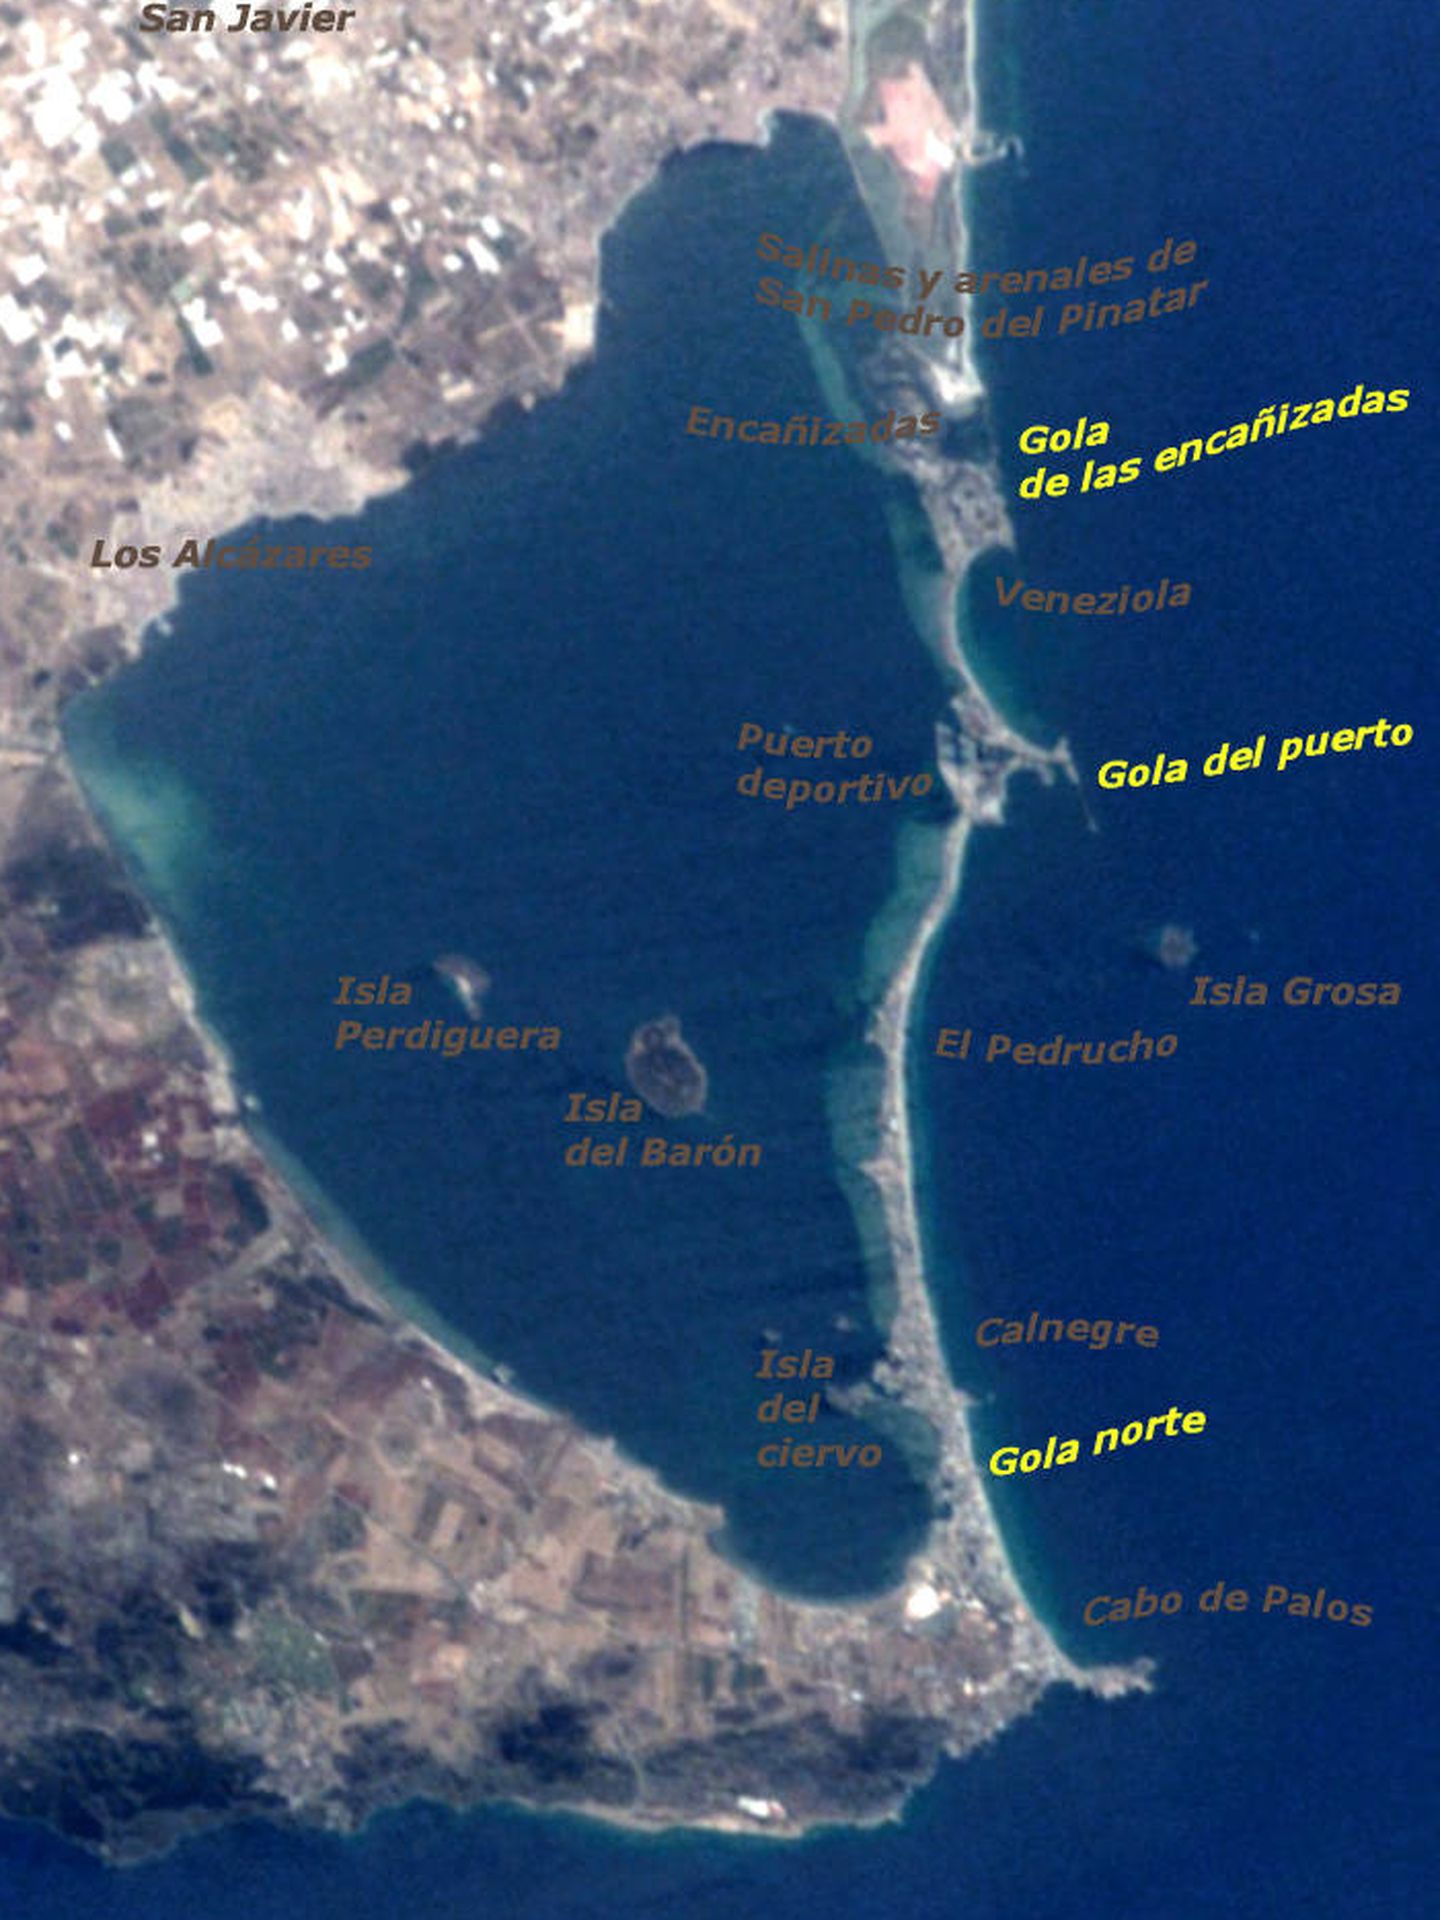 Vista de satélite de la Manga del Mar Menor y sus golas.